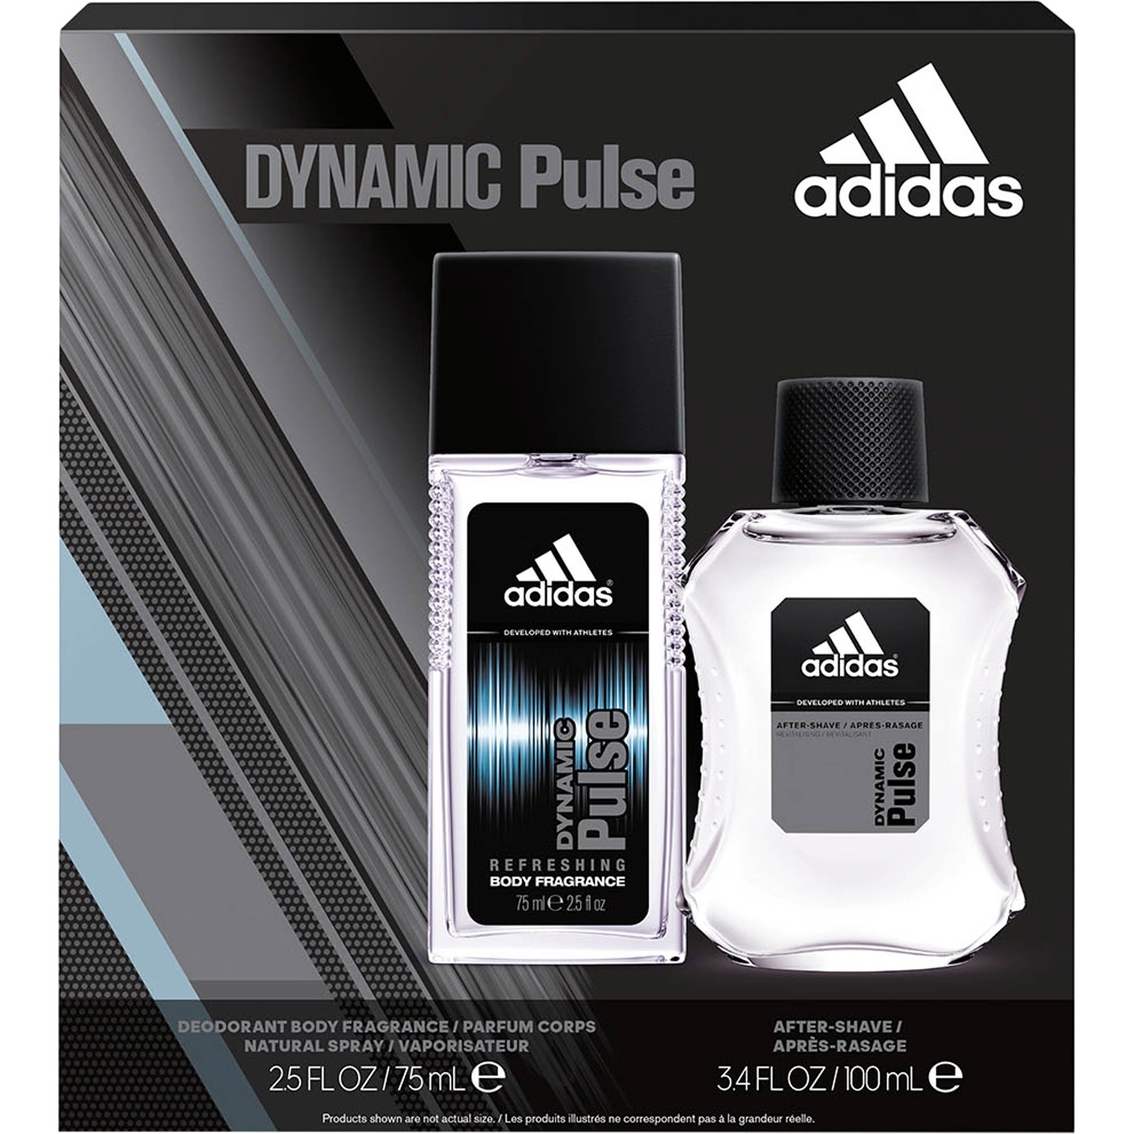 adidas dynamic pulse body fragrance